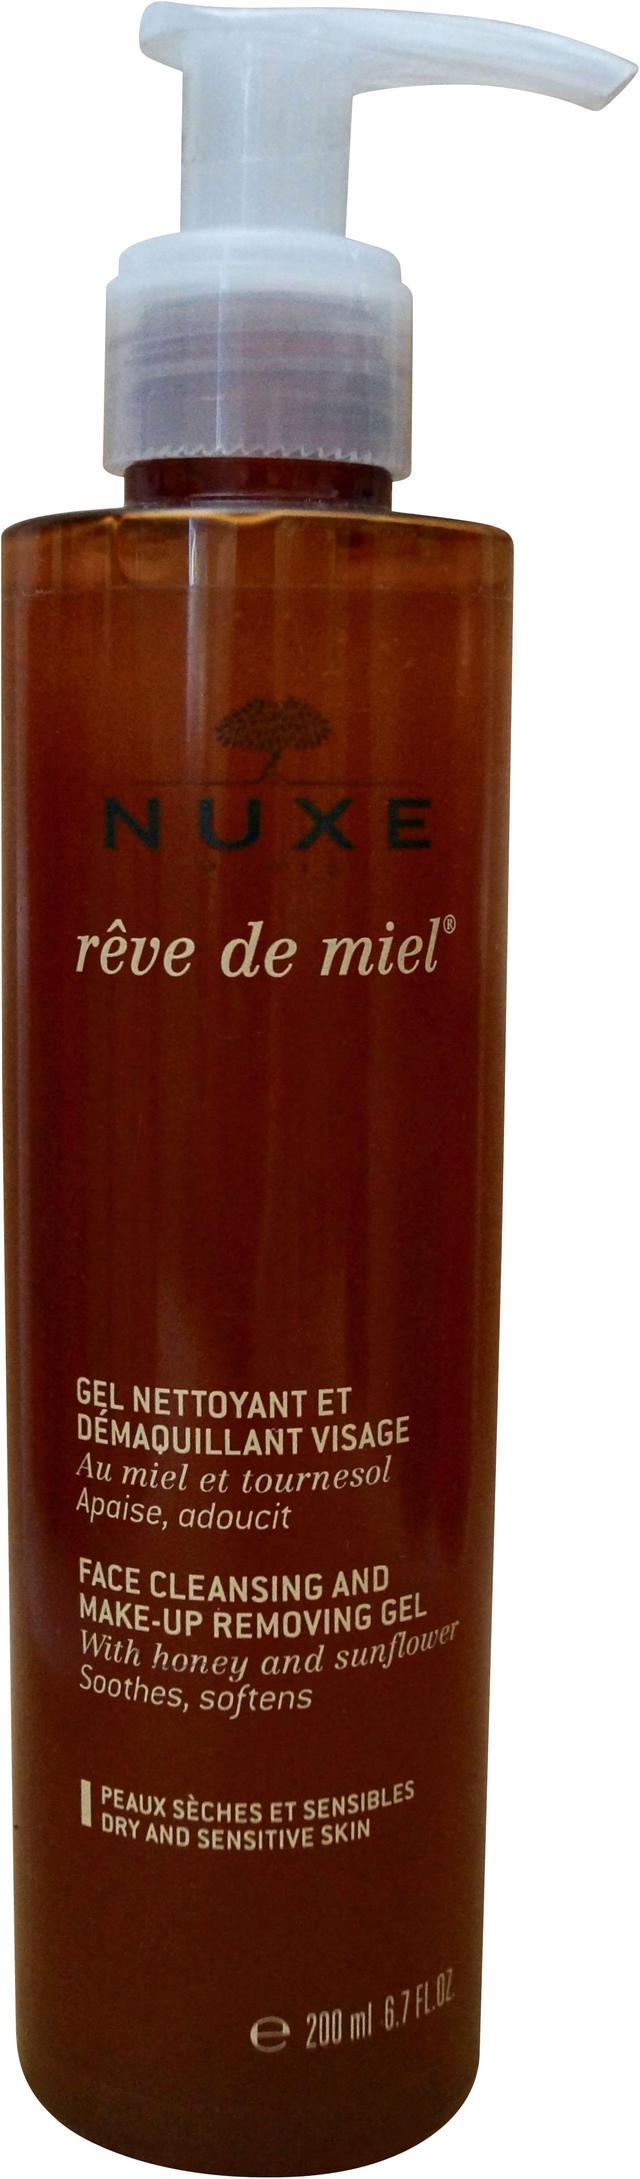 Face Cleansing Removing De & - Nuxe Makeup 200ml/6.7oz Reve Miel